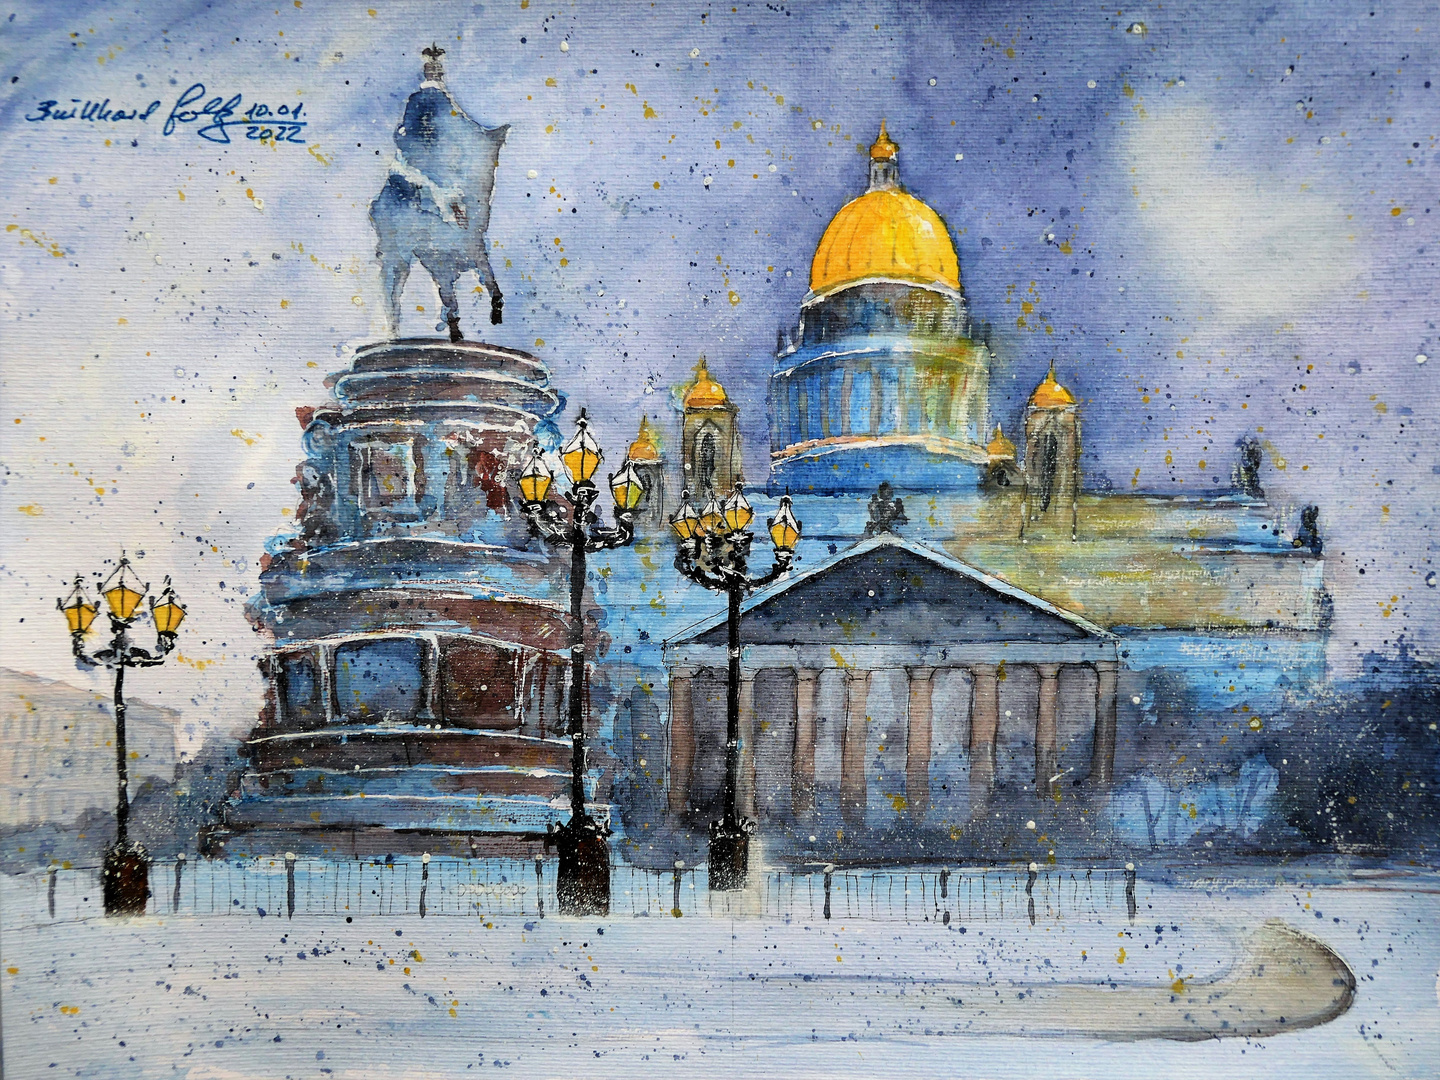 Isaak-Kathedrale in St. Petersburg